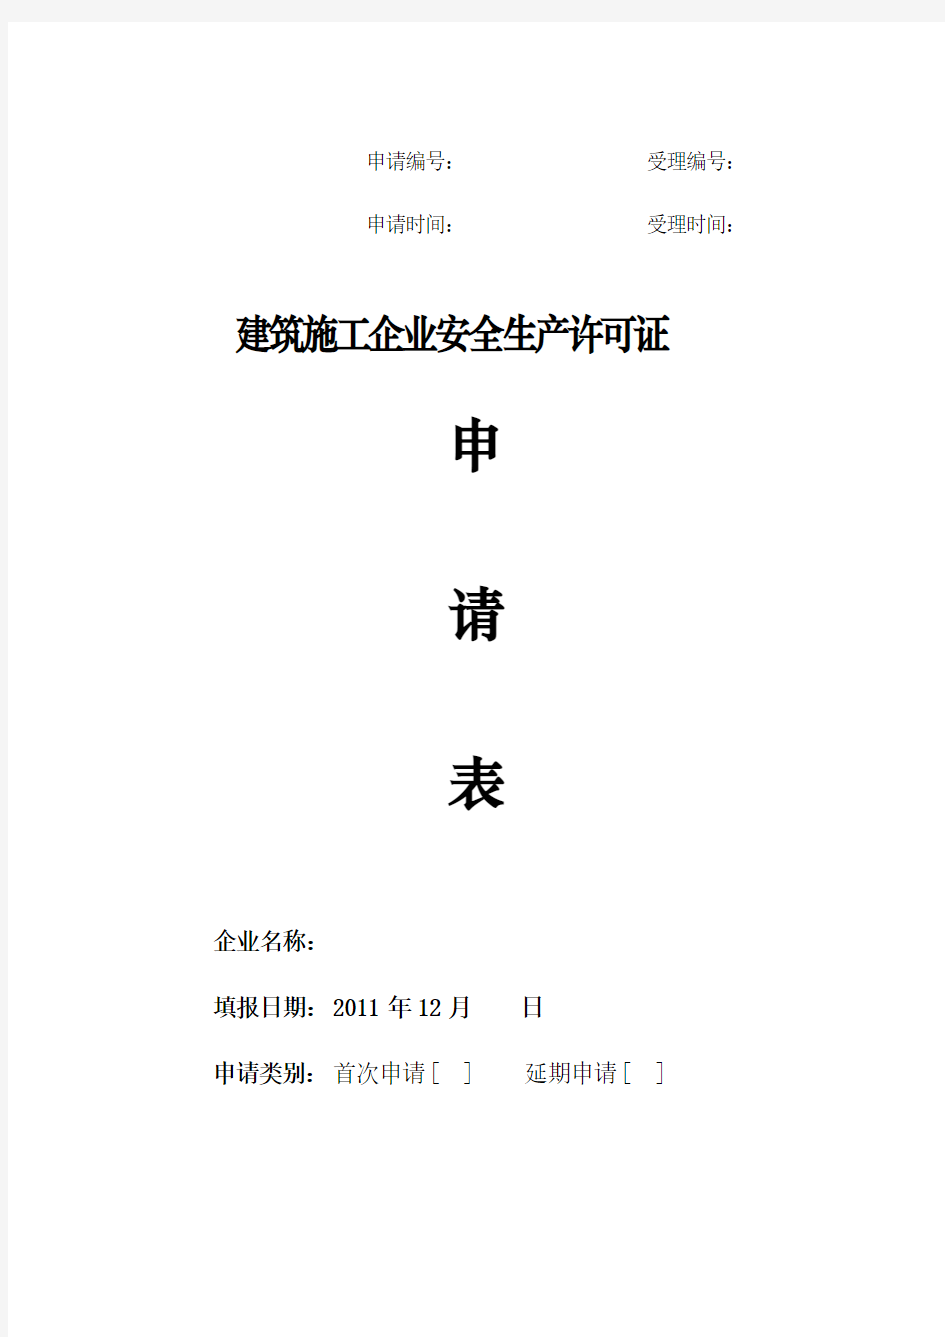 天津市安全生产许可证—申请(申请表)